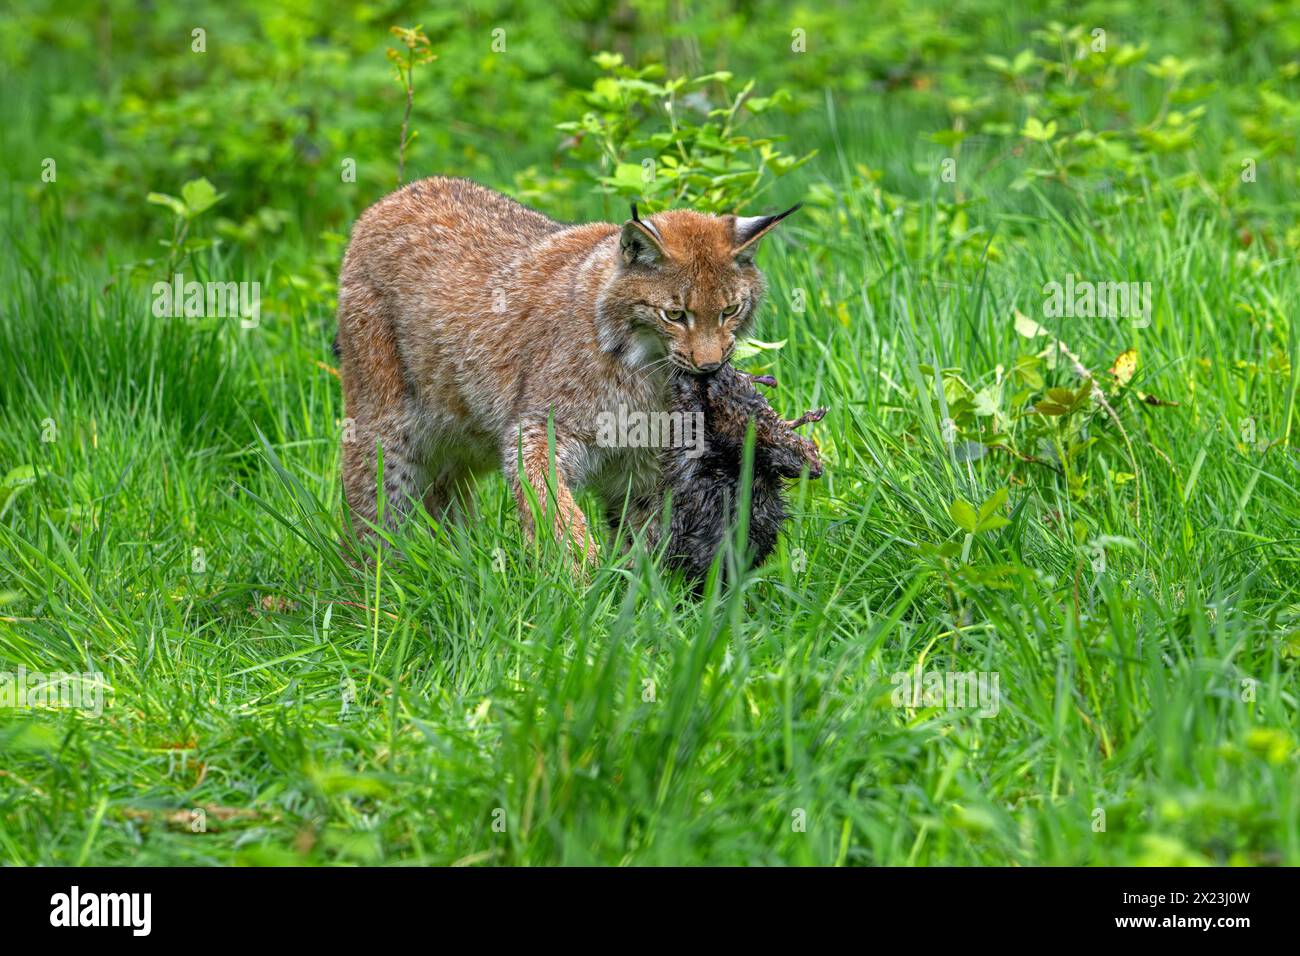 Chasse lynx eurasien (Lynx lynx) marchant avec des proies tuées de rat musqué (Ondatra zibethicus) dans son museau dans les prairies / prairies Banque D'Images